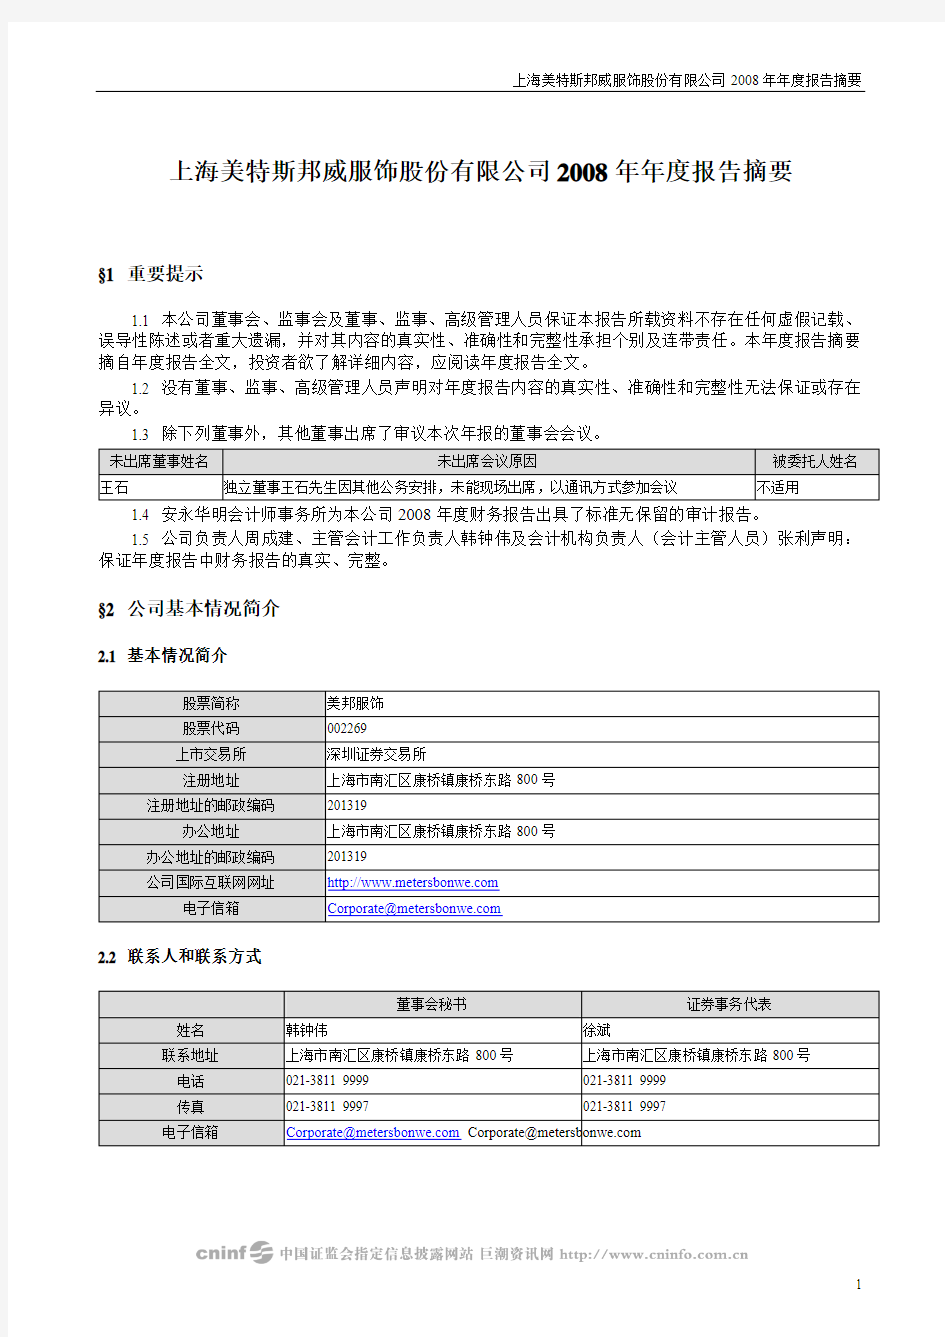 上海美特斯邦威服饰股份有限公司2008年年度报告摘要